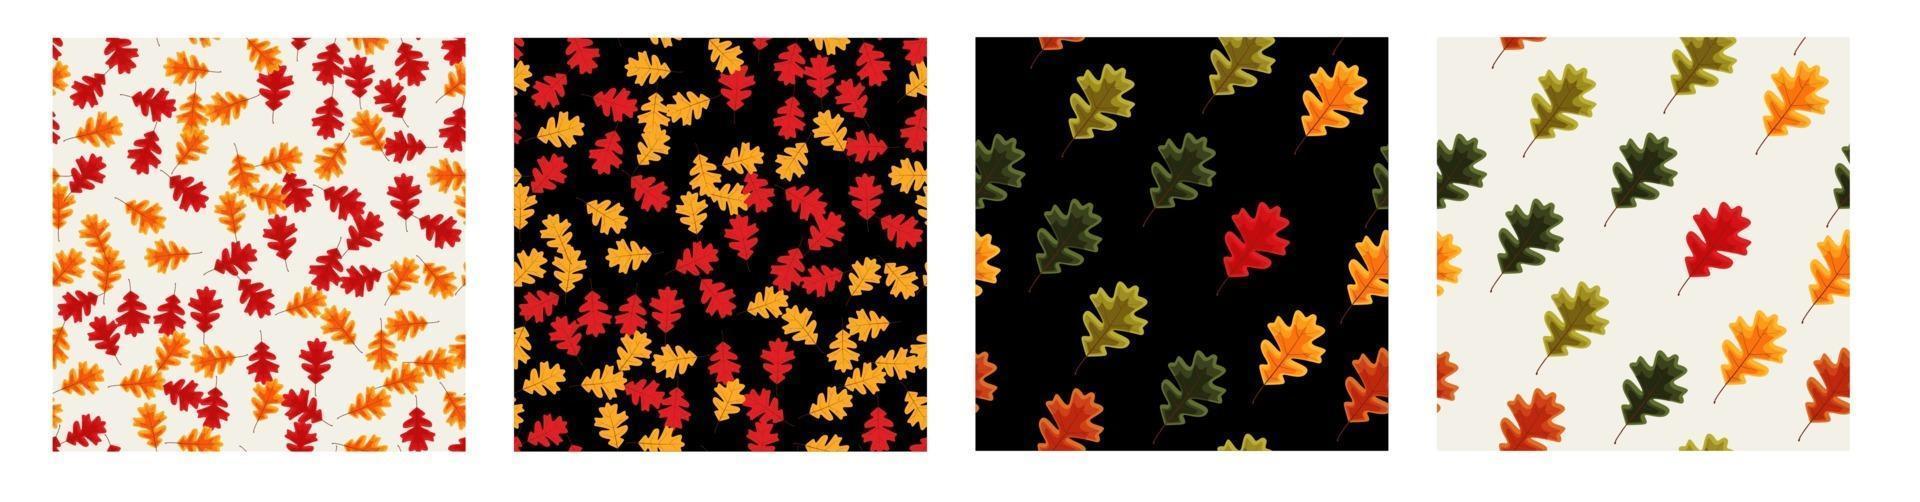 Herbst fallende Blätter nahtlose Muster Hintergrund Sammlung Set vektor